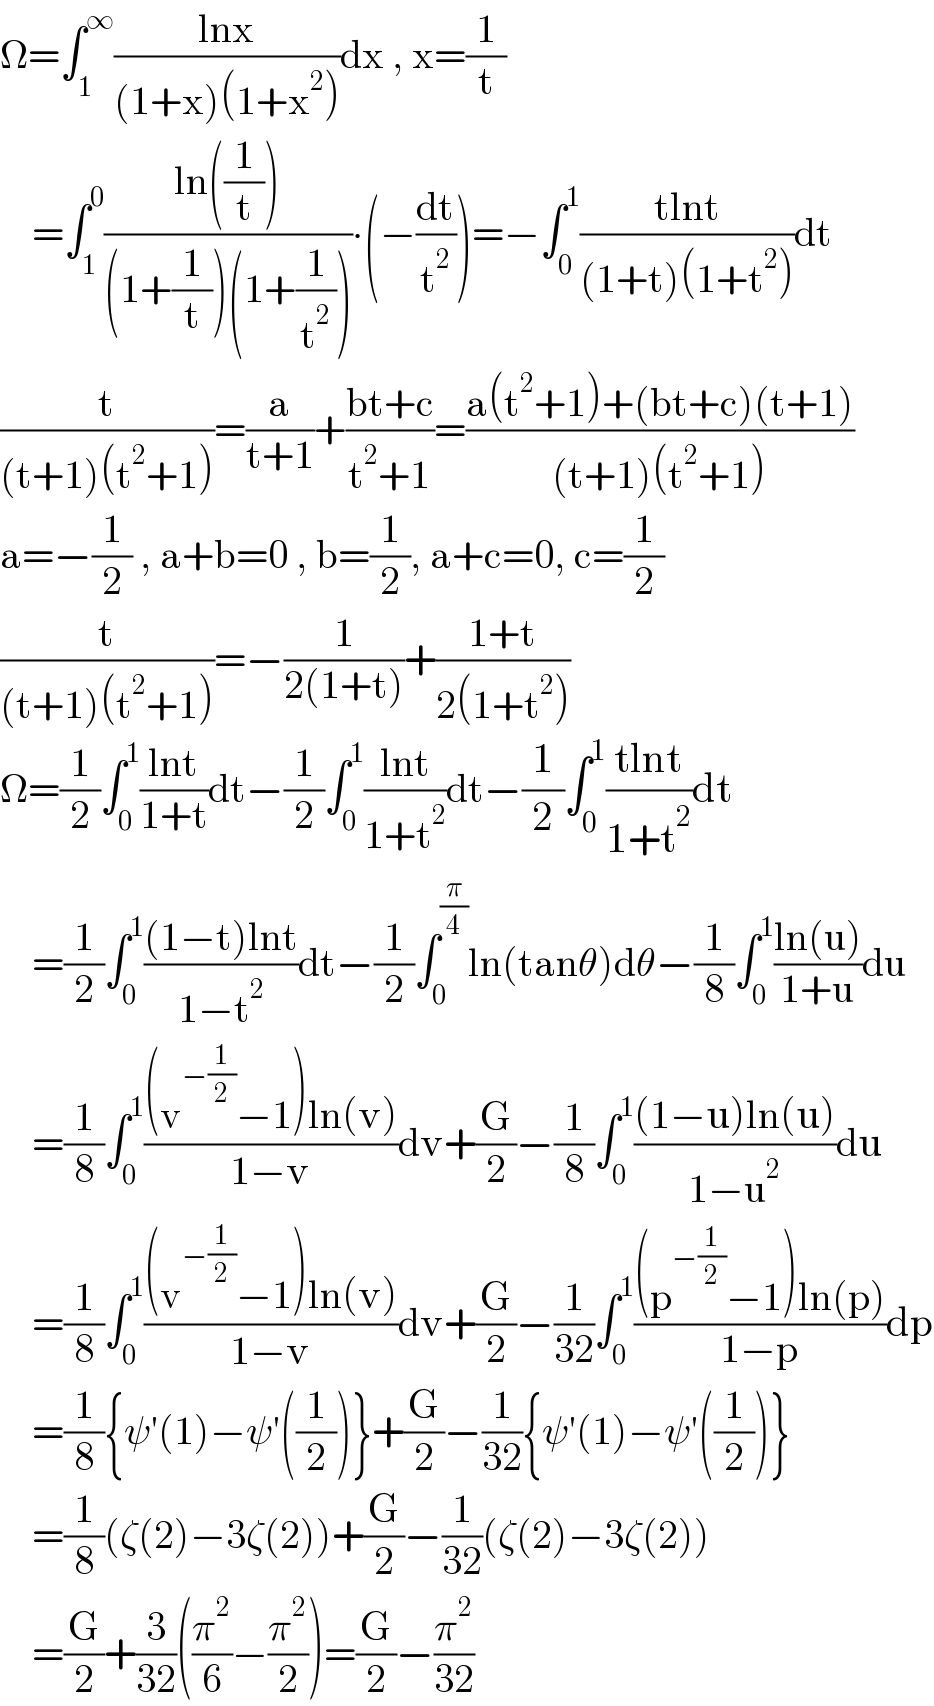 Ω=∫_1 ^∞ ((lnx)/((1+x)(1+x^2 )))dx , x=(1/t)      =∫_1 ^0 ((ln((1/t)))/((1+(1/t))(1+(1/t^2 ))))∙(−(dt/t^2 ))=−∫_0 ^1 ((tlnt)/((1+t)(1+t^2 )))dt  (t/((t+1)(t^2 +1)))=(a/(t+1))+((bt+c)/(t^2 +1))=((a(t^2 +1)+(bt+c)(t+1))/((t+1)(t^2 +1)))  a=−(1/2) , a+b=0 , b=(1/2), a+c=0, c=(1/2)  (t/((t+1)(t^2 +1)))=−(1/(2(1+t)))+((1+t)/(2(1+t^2 )))  Ω=(1/2)∫_0 ^1 ((lnt)/(1+t))dt−(1/2)∫_0 ^1 ((lnt)/(1+t^2 ))dt−(1/2)∫_0 ^1 ((tlnt)/(1+t^2 ))dt      =(1/2)∫_0 ^1 (((1−t)lnt)/(1−t^2 ))dt−(1/2)∫_0 ^(π/4) ln(tanθ)dθ−(1/8)∫_0 ^1 ((ln(u))/(1+u))du      =(1/8)∫_0 ^1 (((v^(−(1/2)) −1)ln(v))/(1−v))dv+(G/2)−(1/8)∫_0 ^1 (((1−u)ln(u))/(1−u^2 ))du      =(1/8)∫_0 ^1 (((v^(−(1/2)) −1)ln(v))/(1−v))dv+(G/2)−(1/(32))∫_0 ^1 (((p^(−(1/2)) −1)ln(p))/(1−p))dp      =(1/8){ψ′(1)−ψ′((1/2))}+(G/2)−(1/(32)){ψ′(1)−ψ′((1/2))}      =(1/8)(ζ(2)−3ζ(2))+(G/2)−(1/(32))(ζ(2)−3ζ(2))      =(G/2)+(3/(32))((π^2 /6)−(π^2 /2))=(G/2)−(π^2 /(32))  